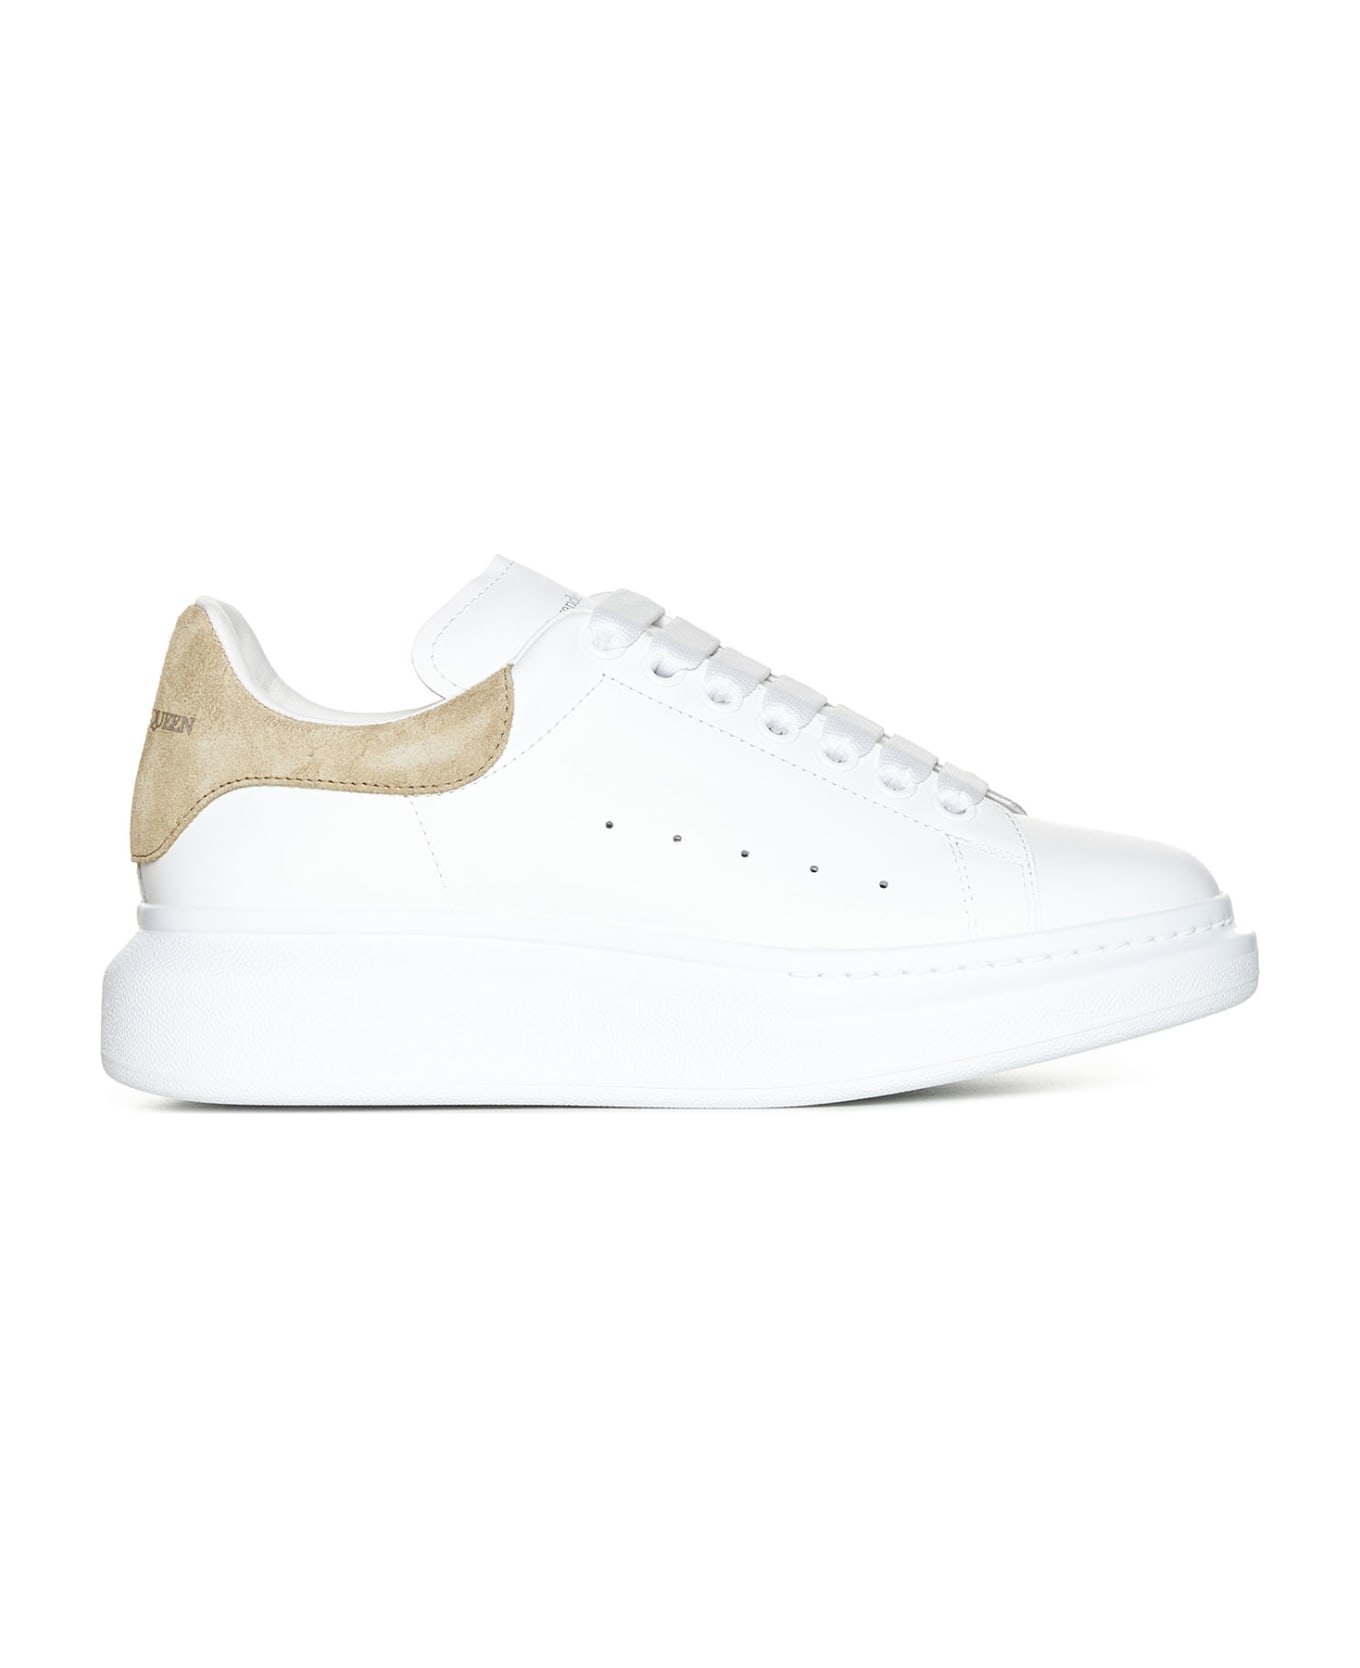 Alexander McQueen Sneakers - White/beige